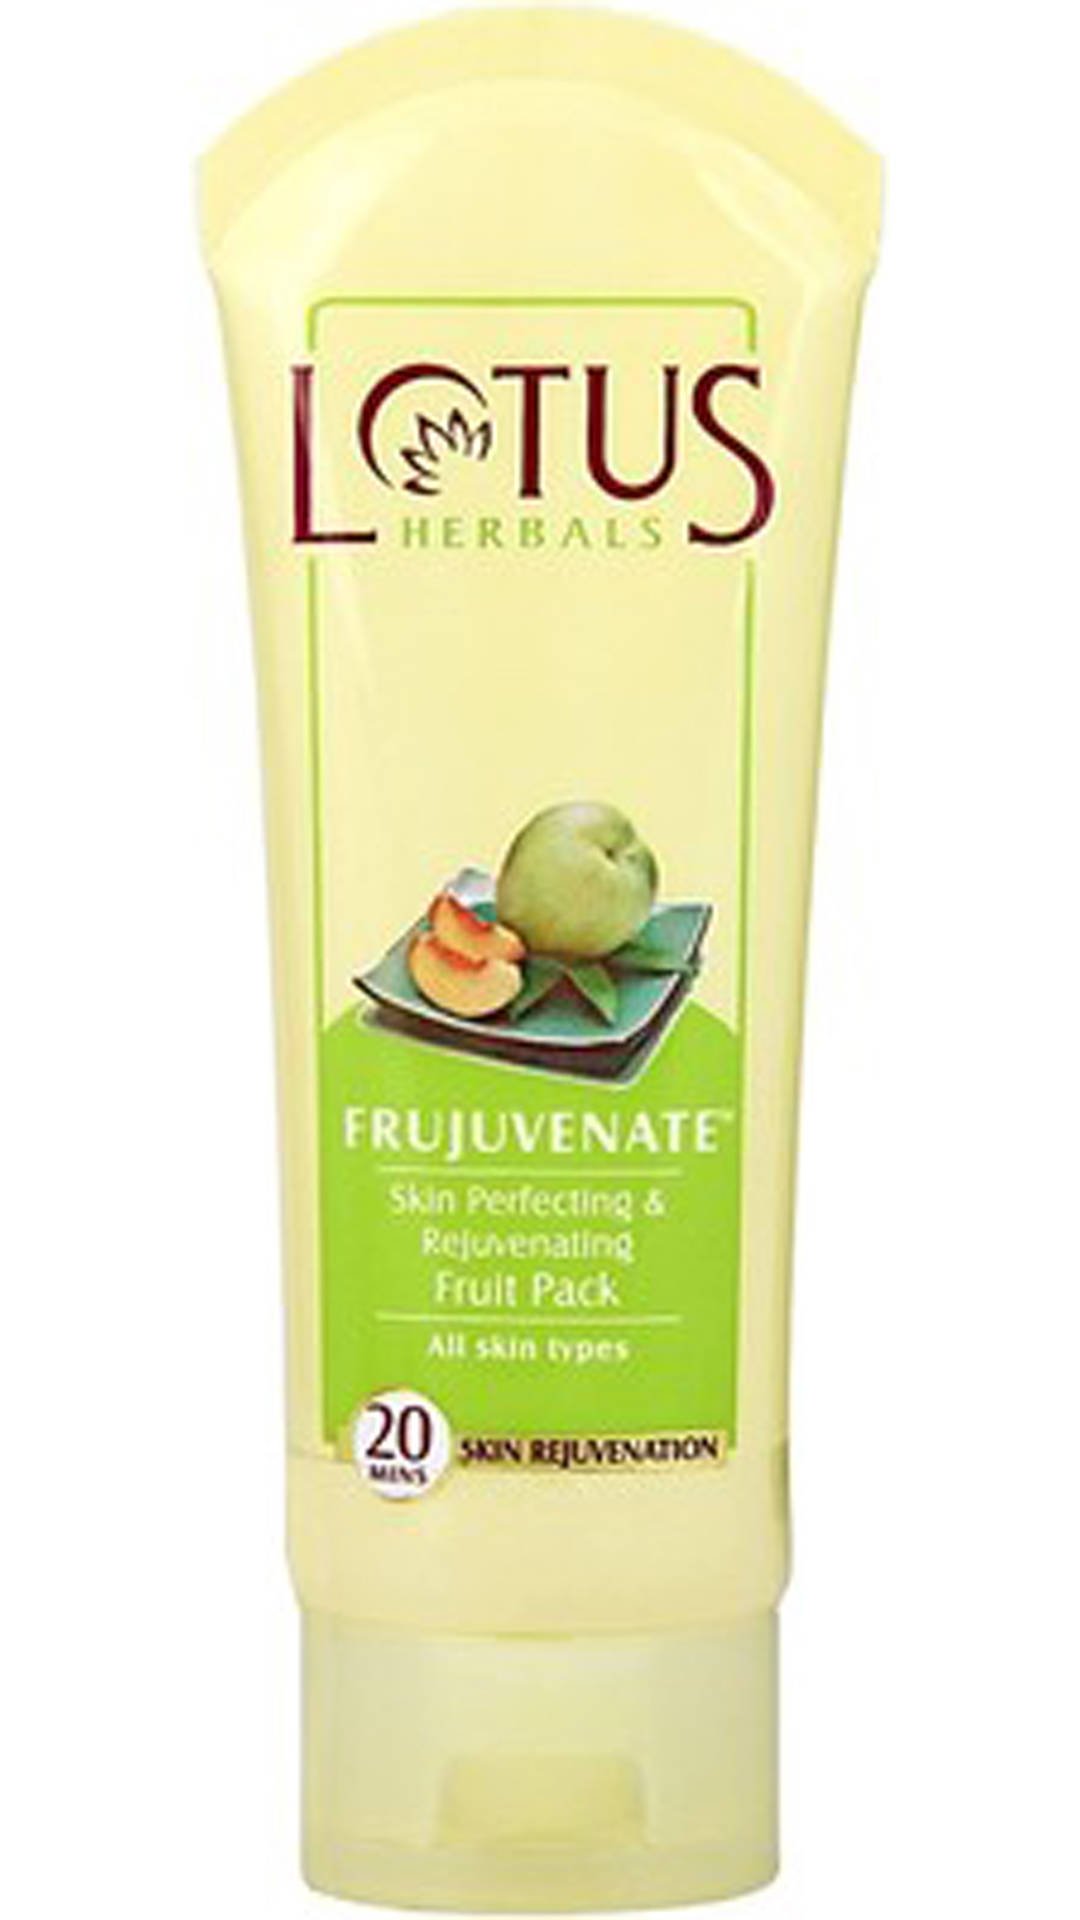 Lotus Herbals Frujuvenate Skin Perfecting and Rejuvenating Fruit Pack 